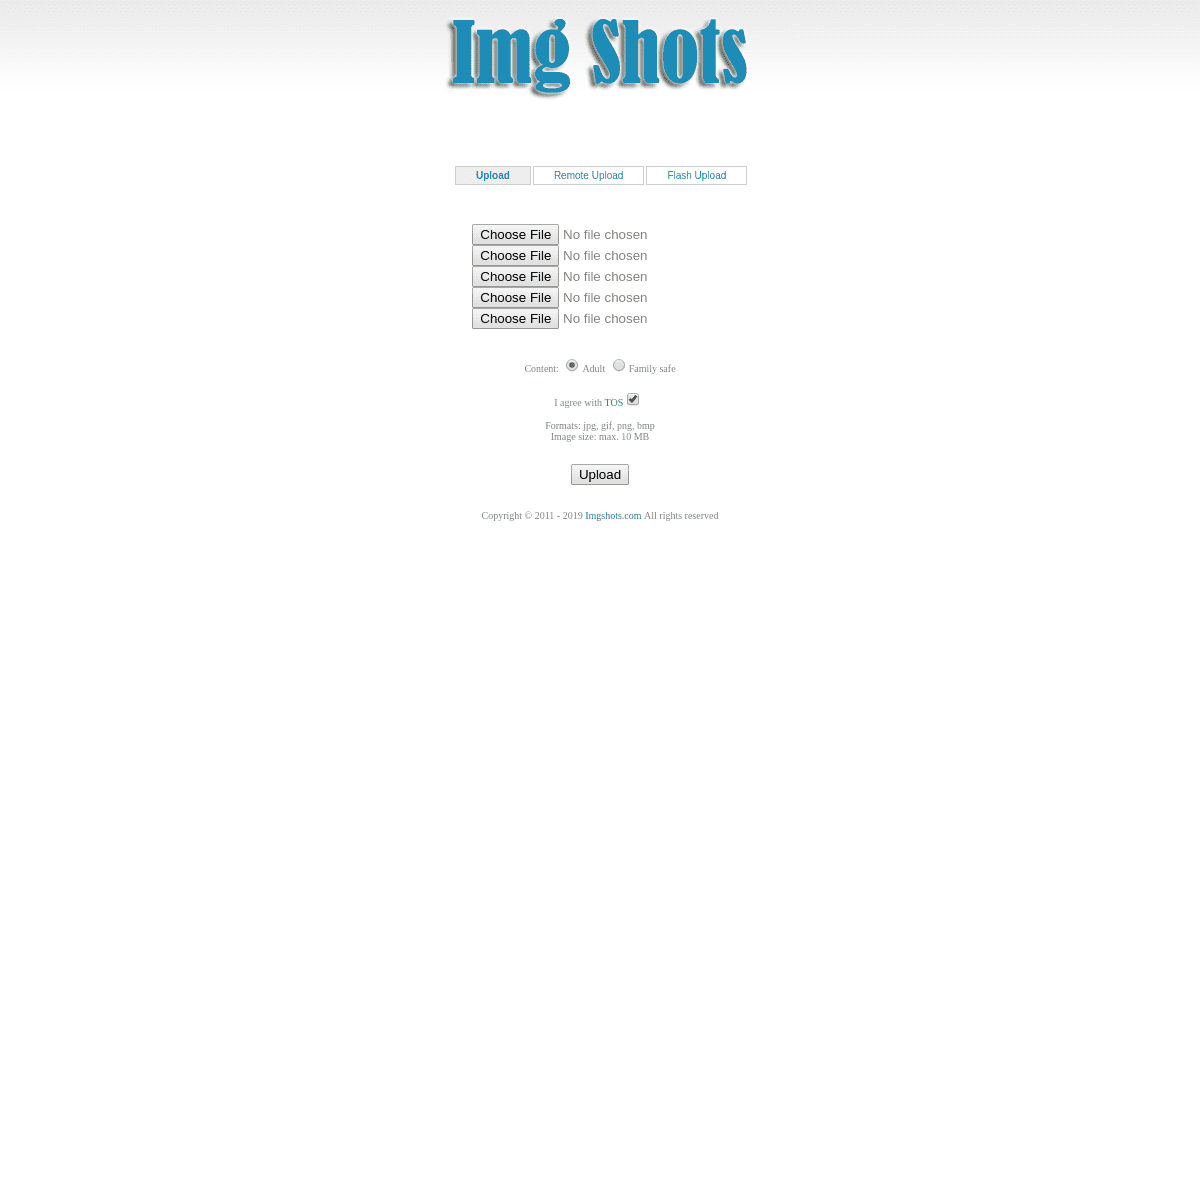 A complete backup of imgshots.com